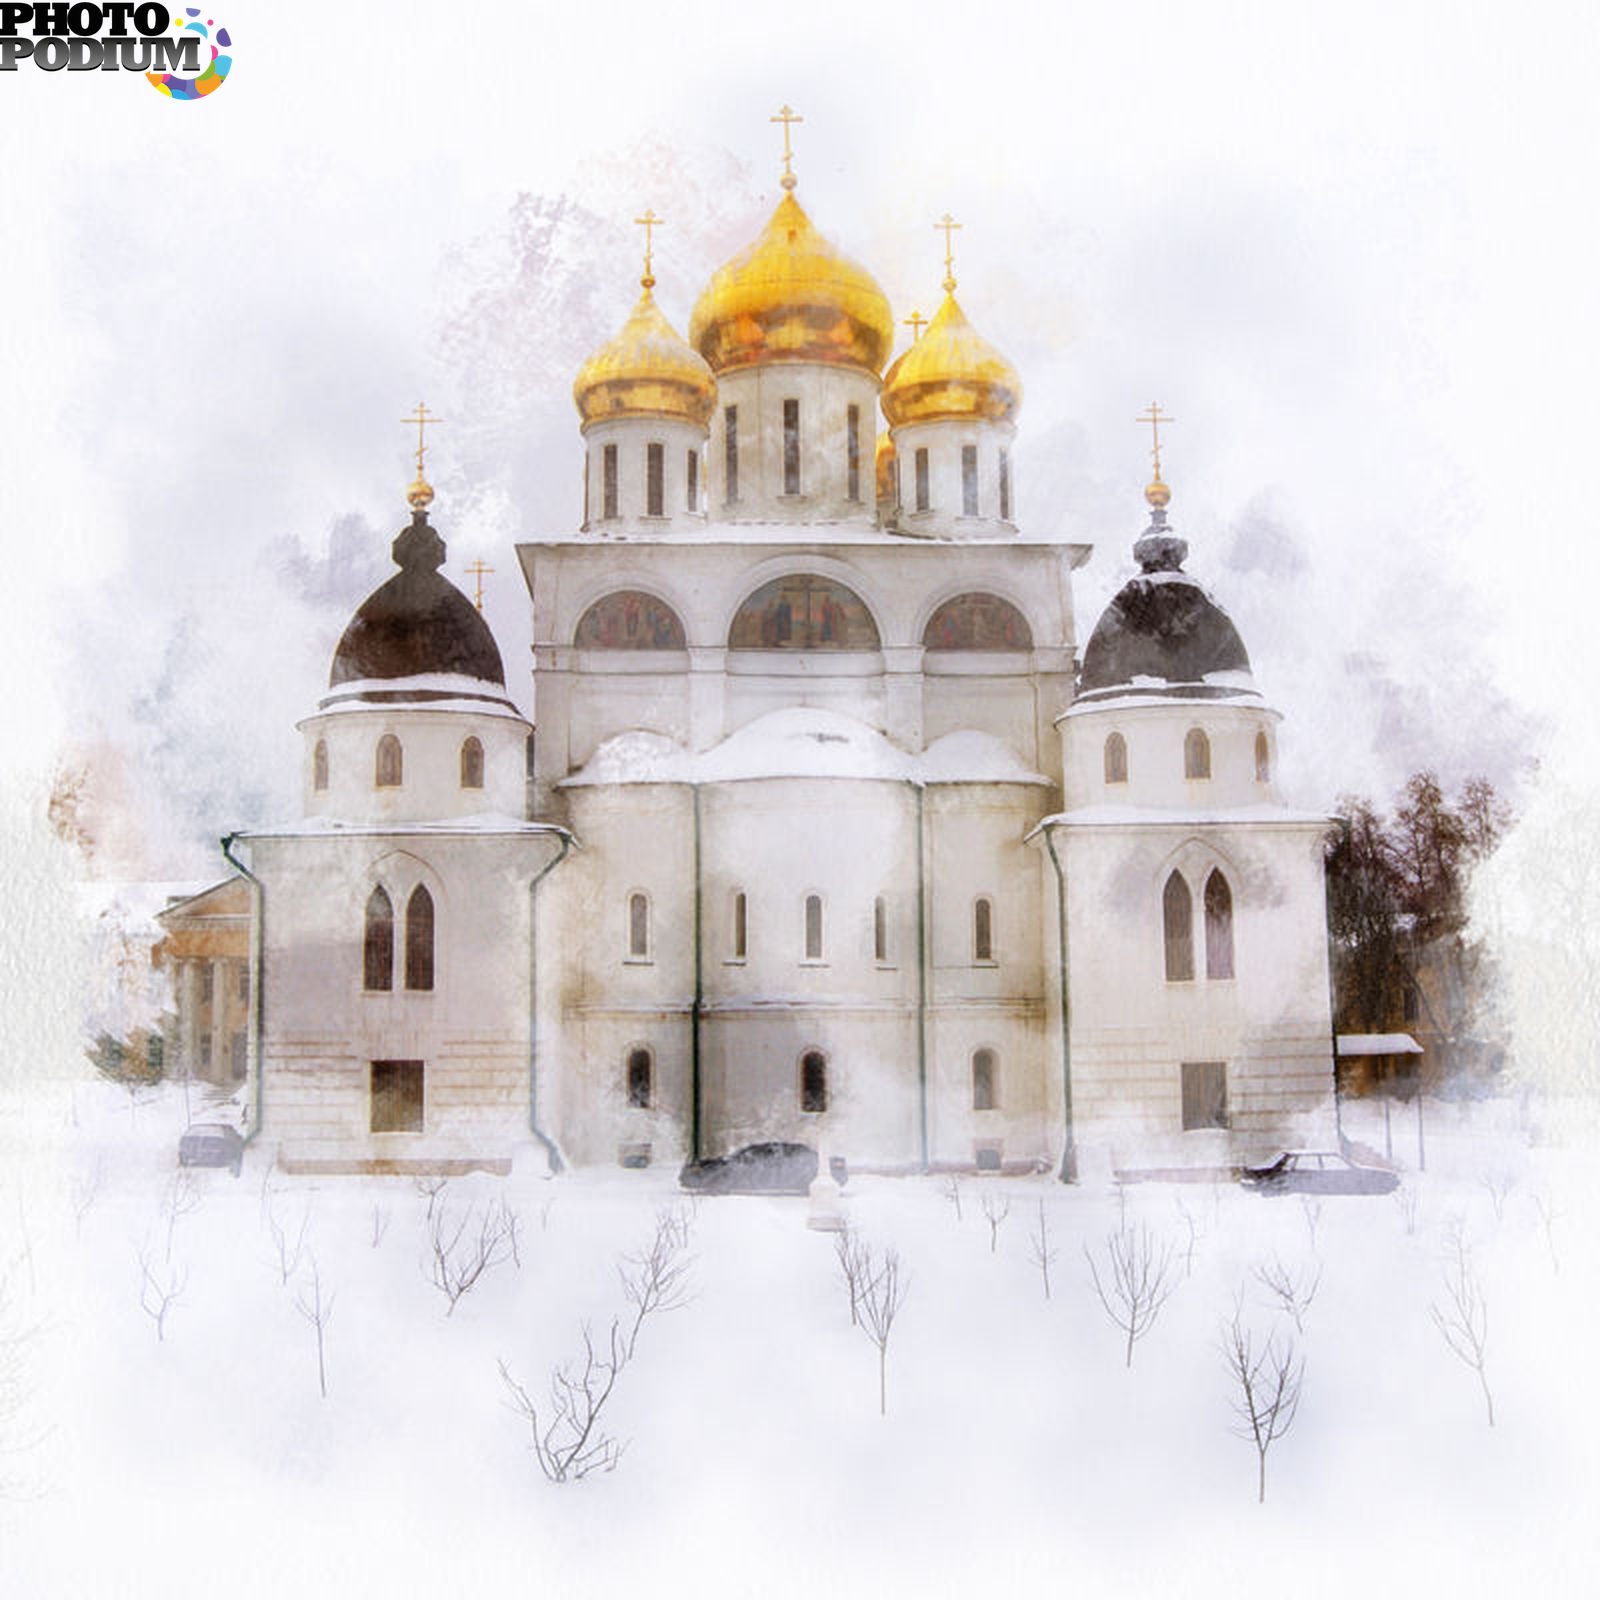 Успенского собор Дмитров зима